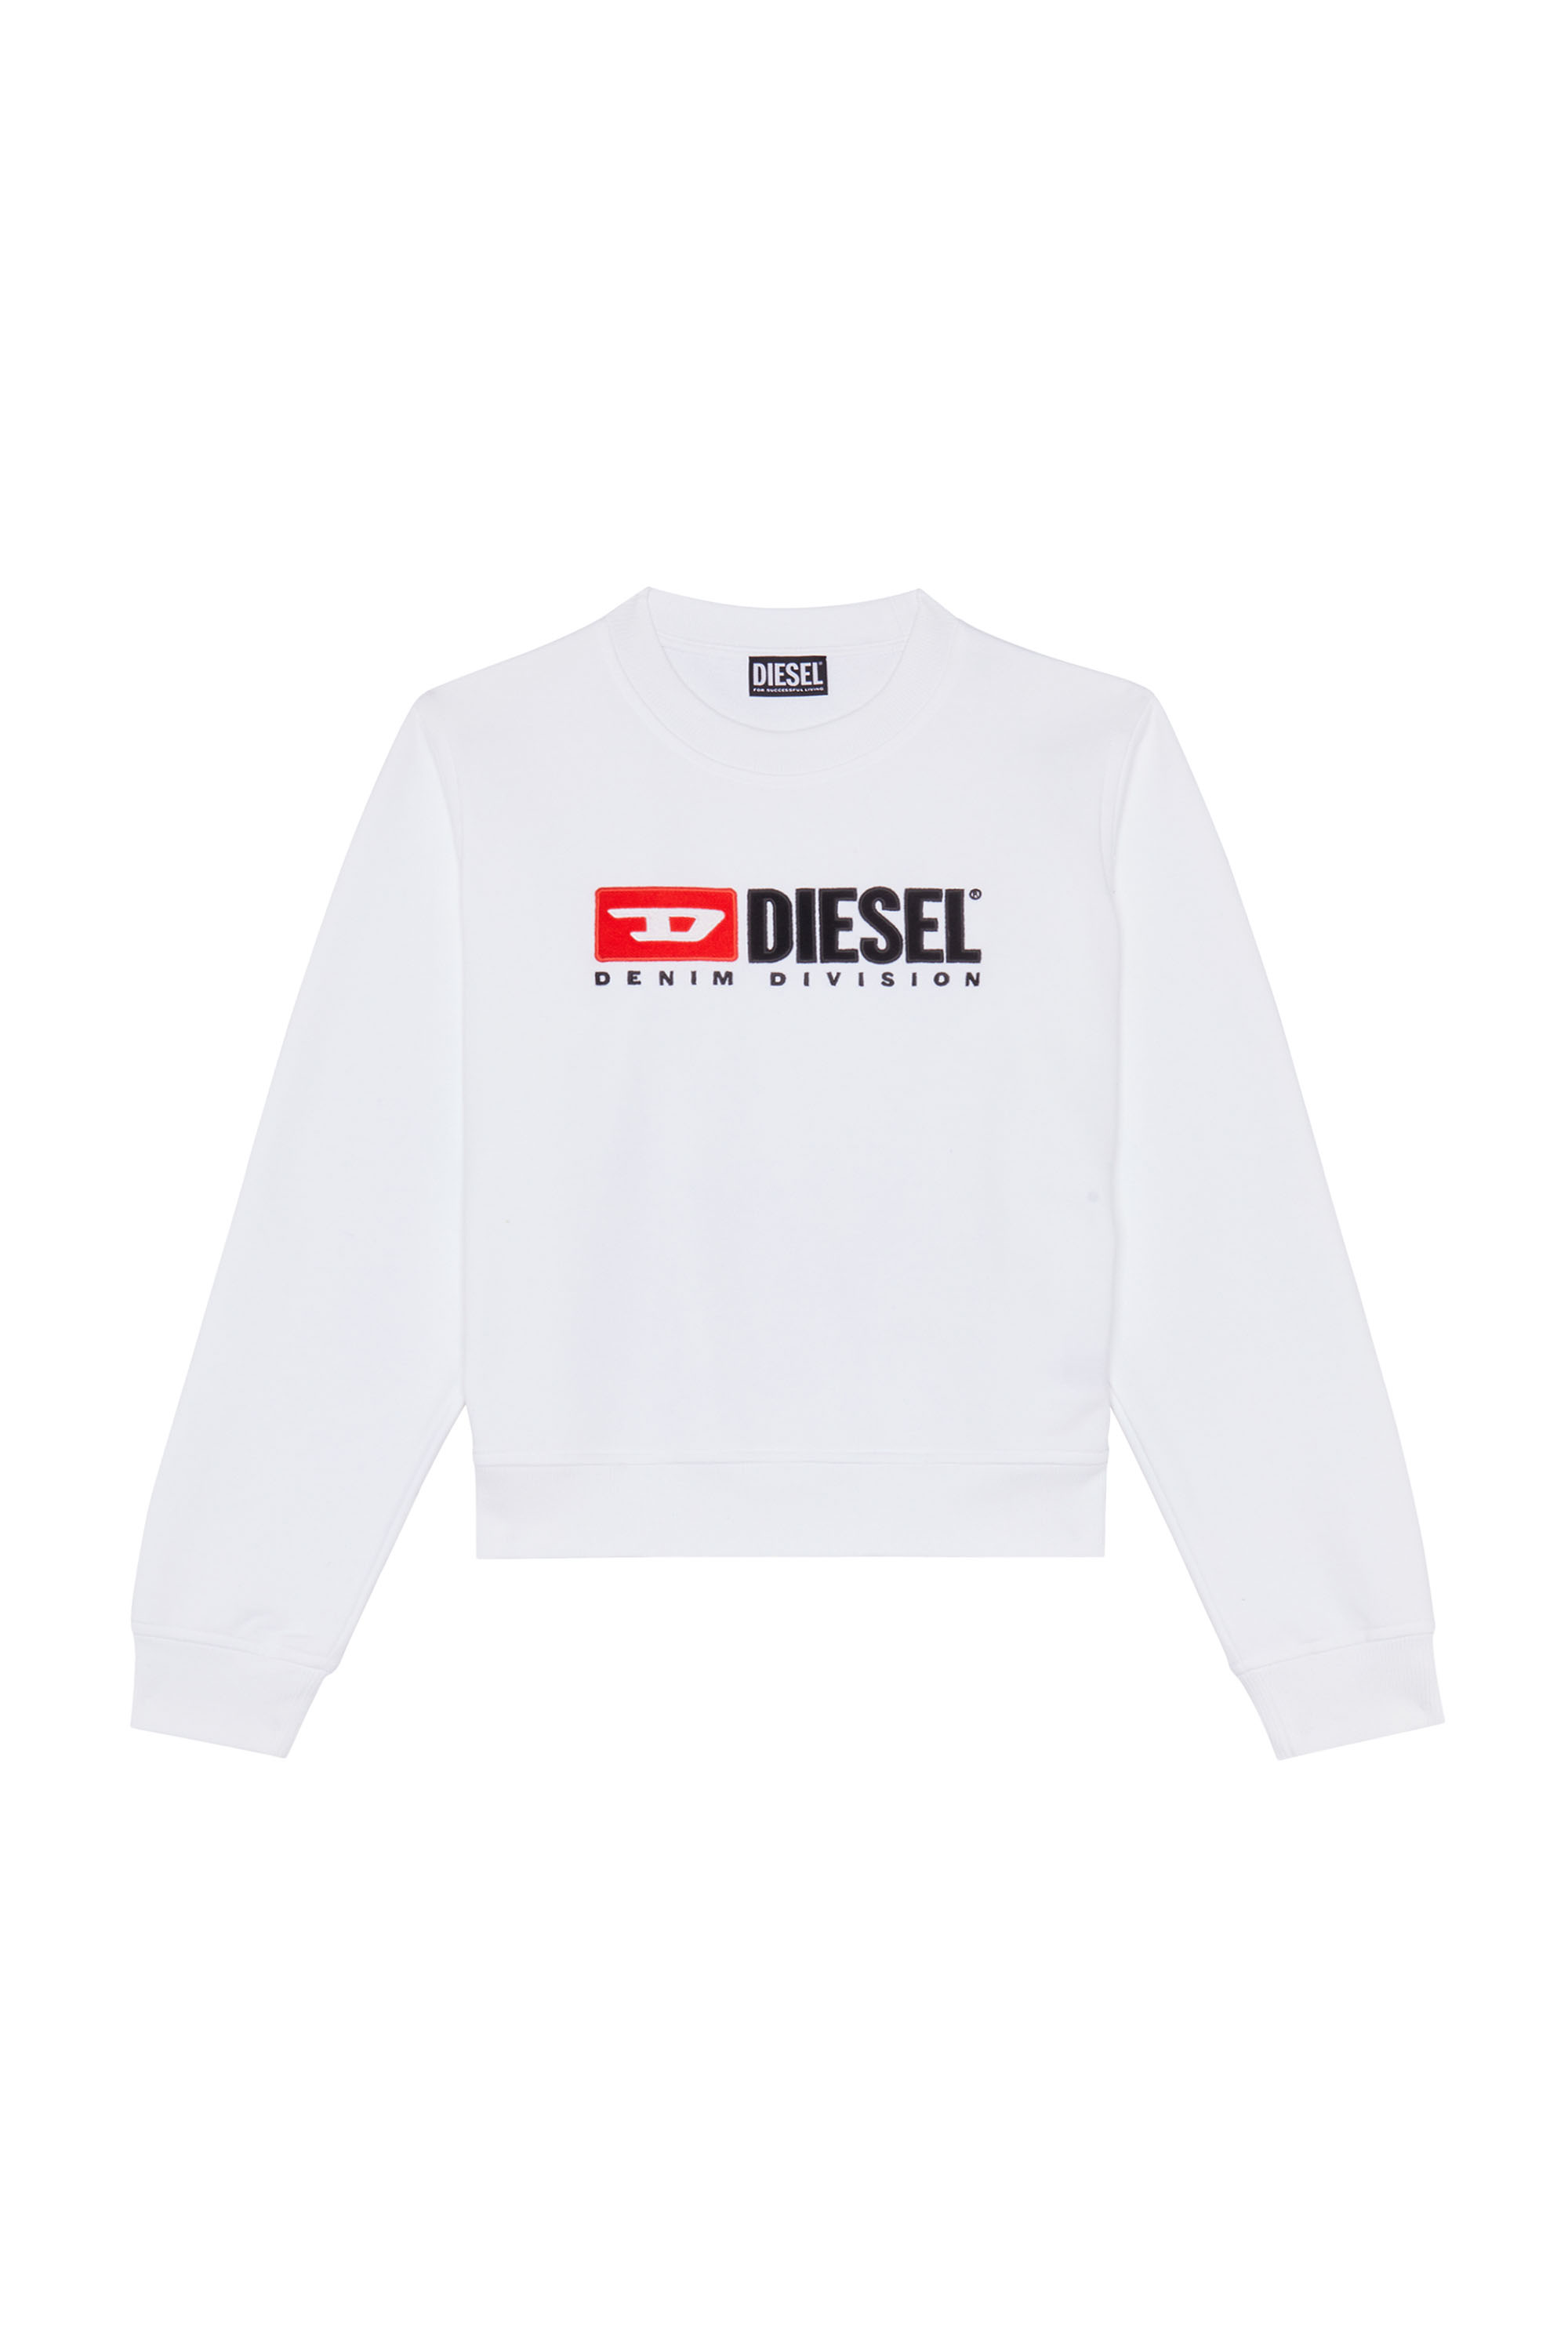 Diesel - F-REGGY-DIV, White - Image 1